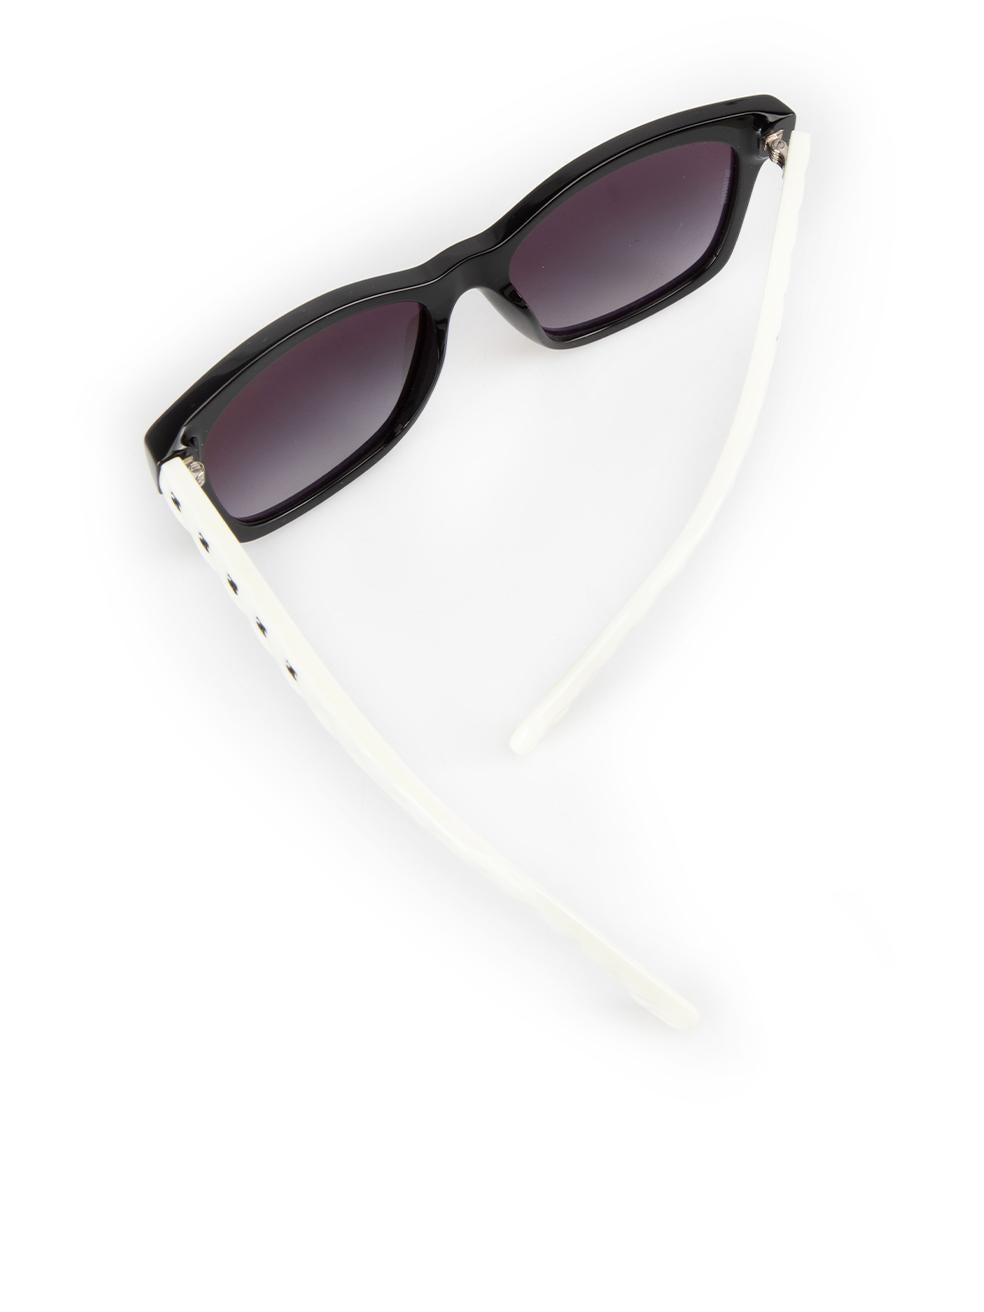 Chanel Black & White Square Sunglasses For Sale 3